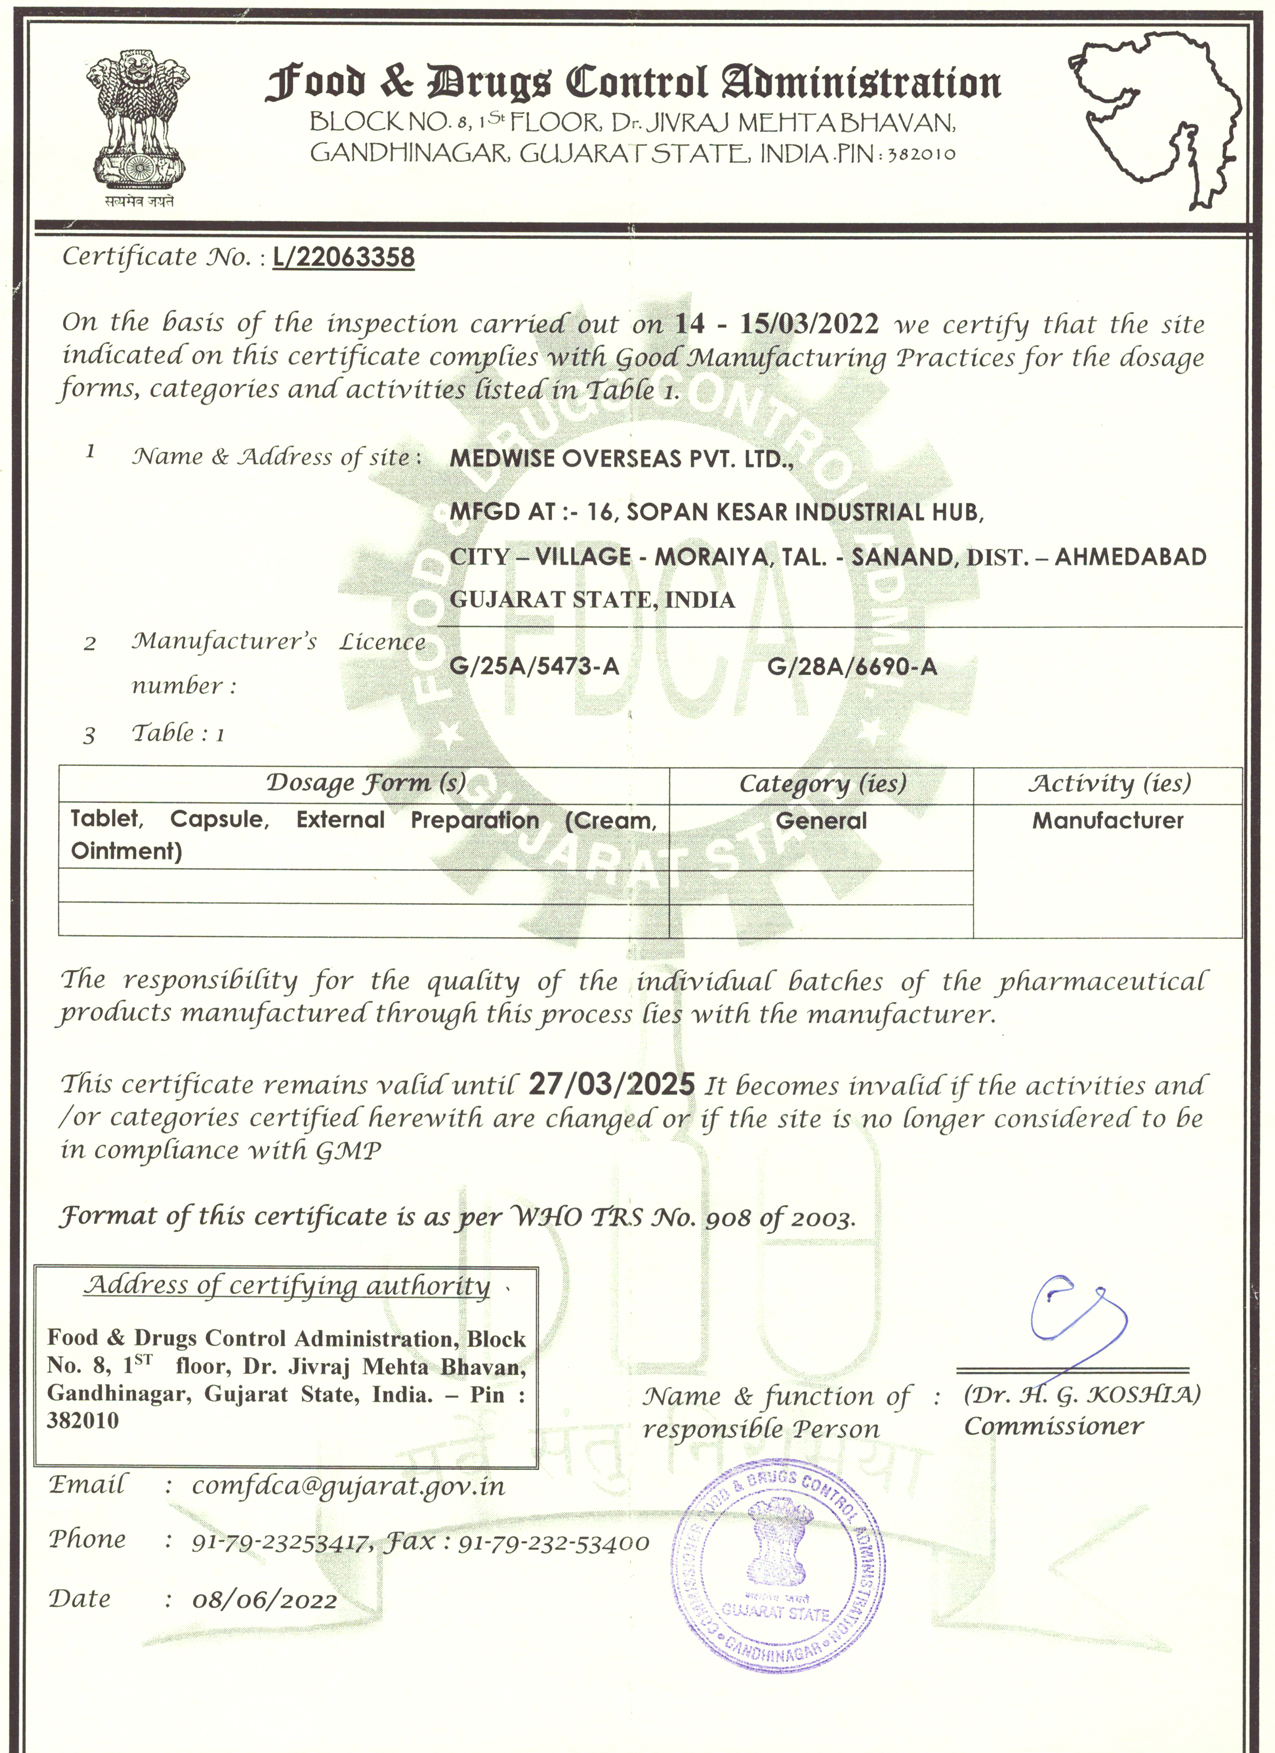 WHO-GMP Certificate